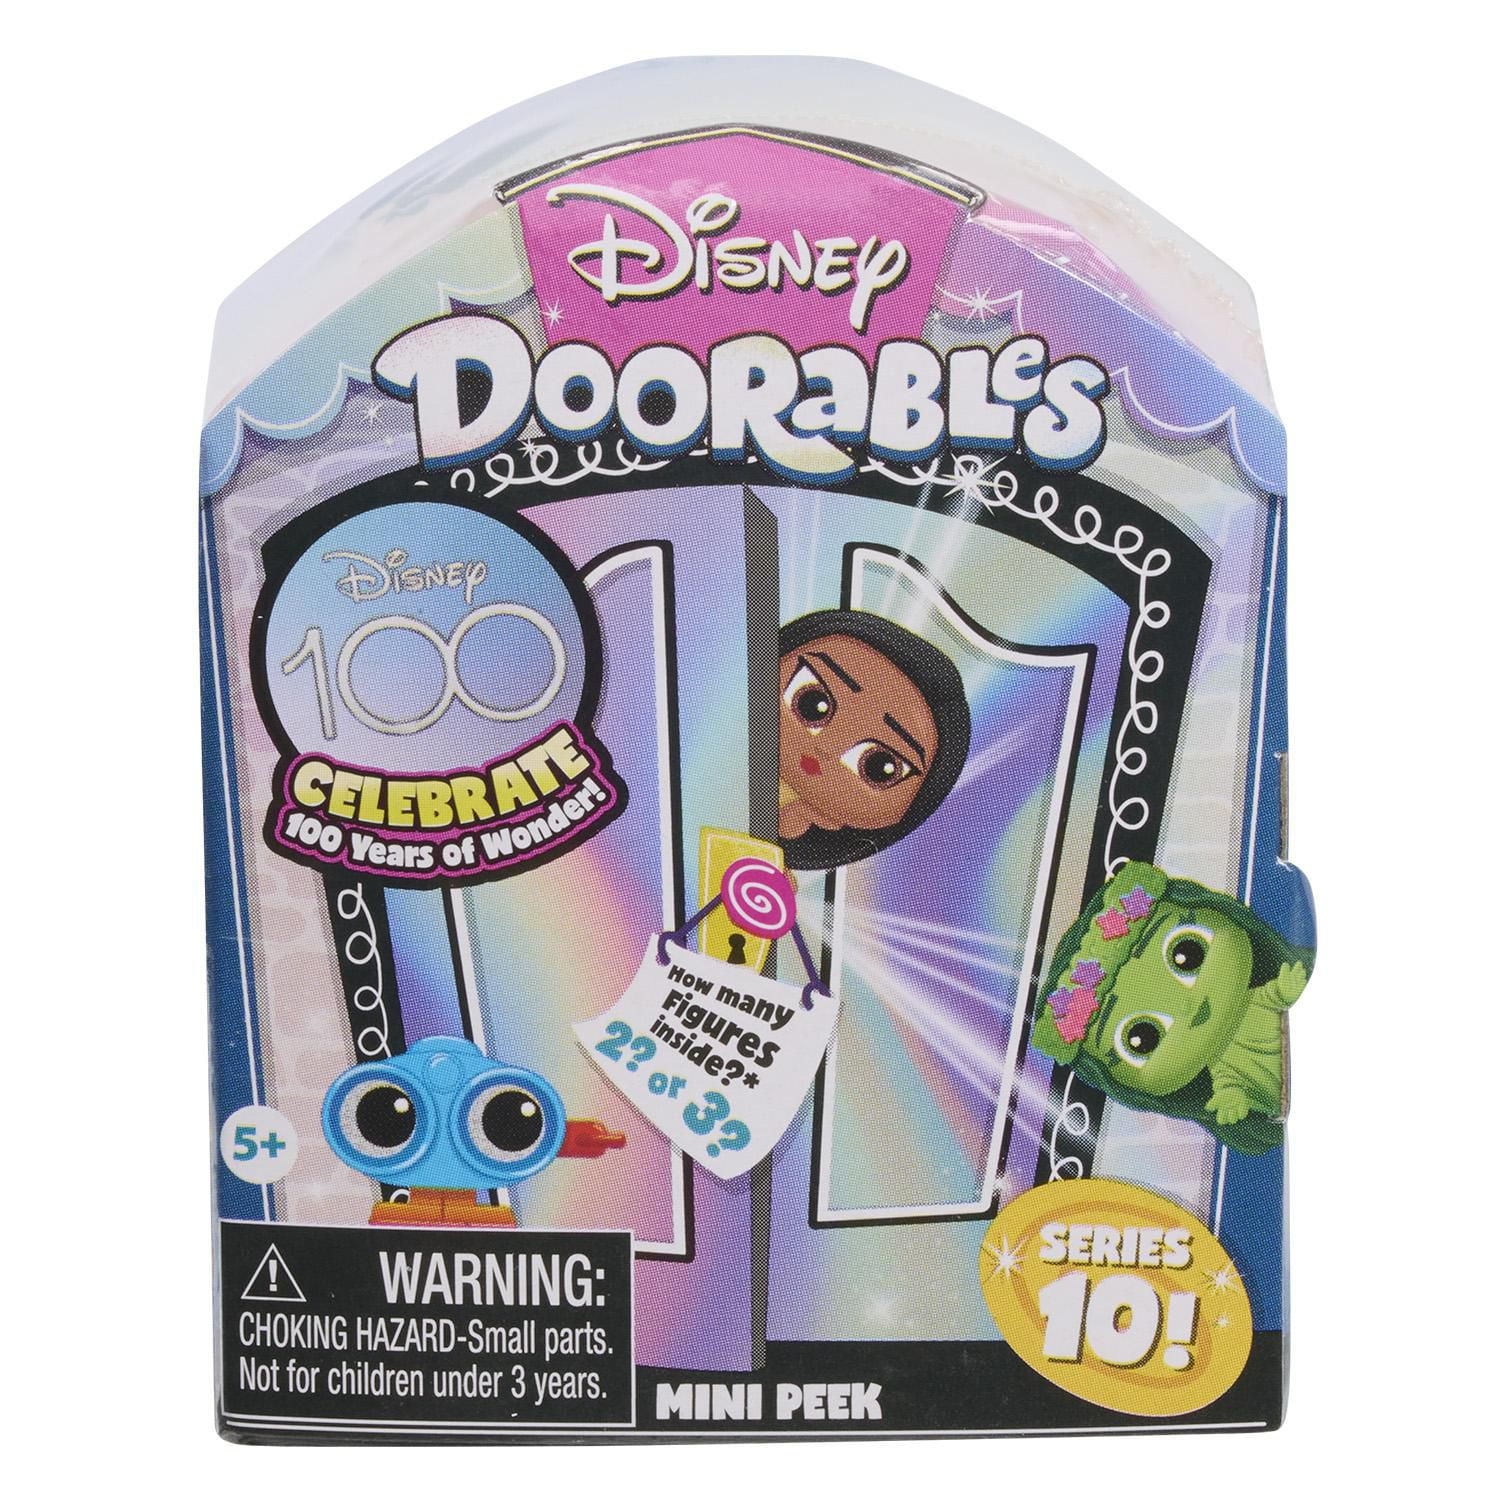 Disney Doorables NEW Mini Peek Series 10, Collectible Blind Bag Figures,  Styles May Vary, Disney Doorables Mini Peek Series 10